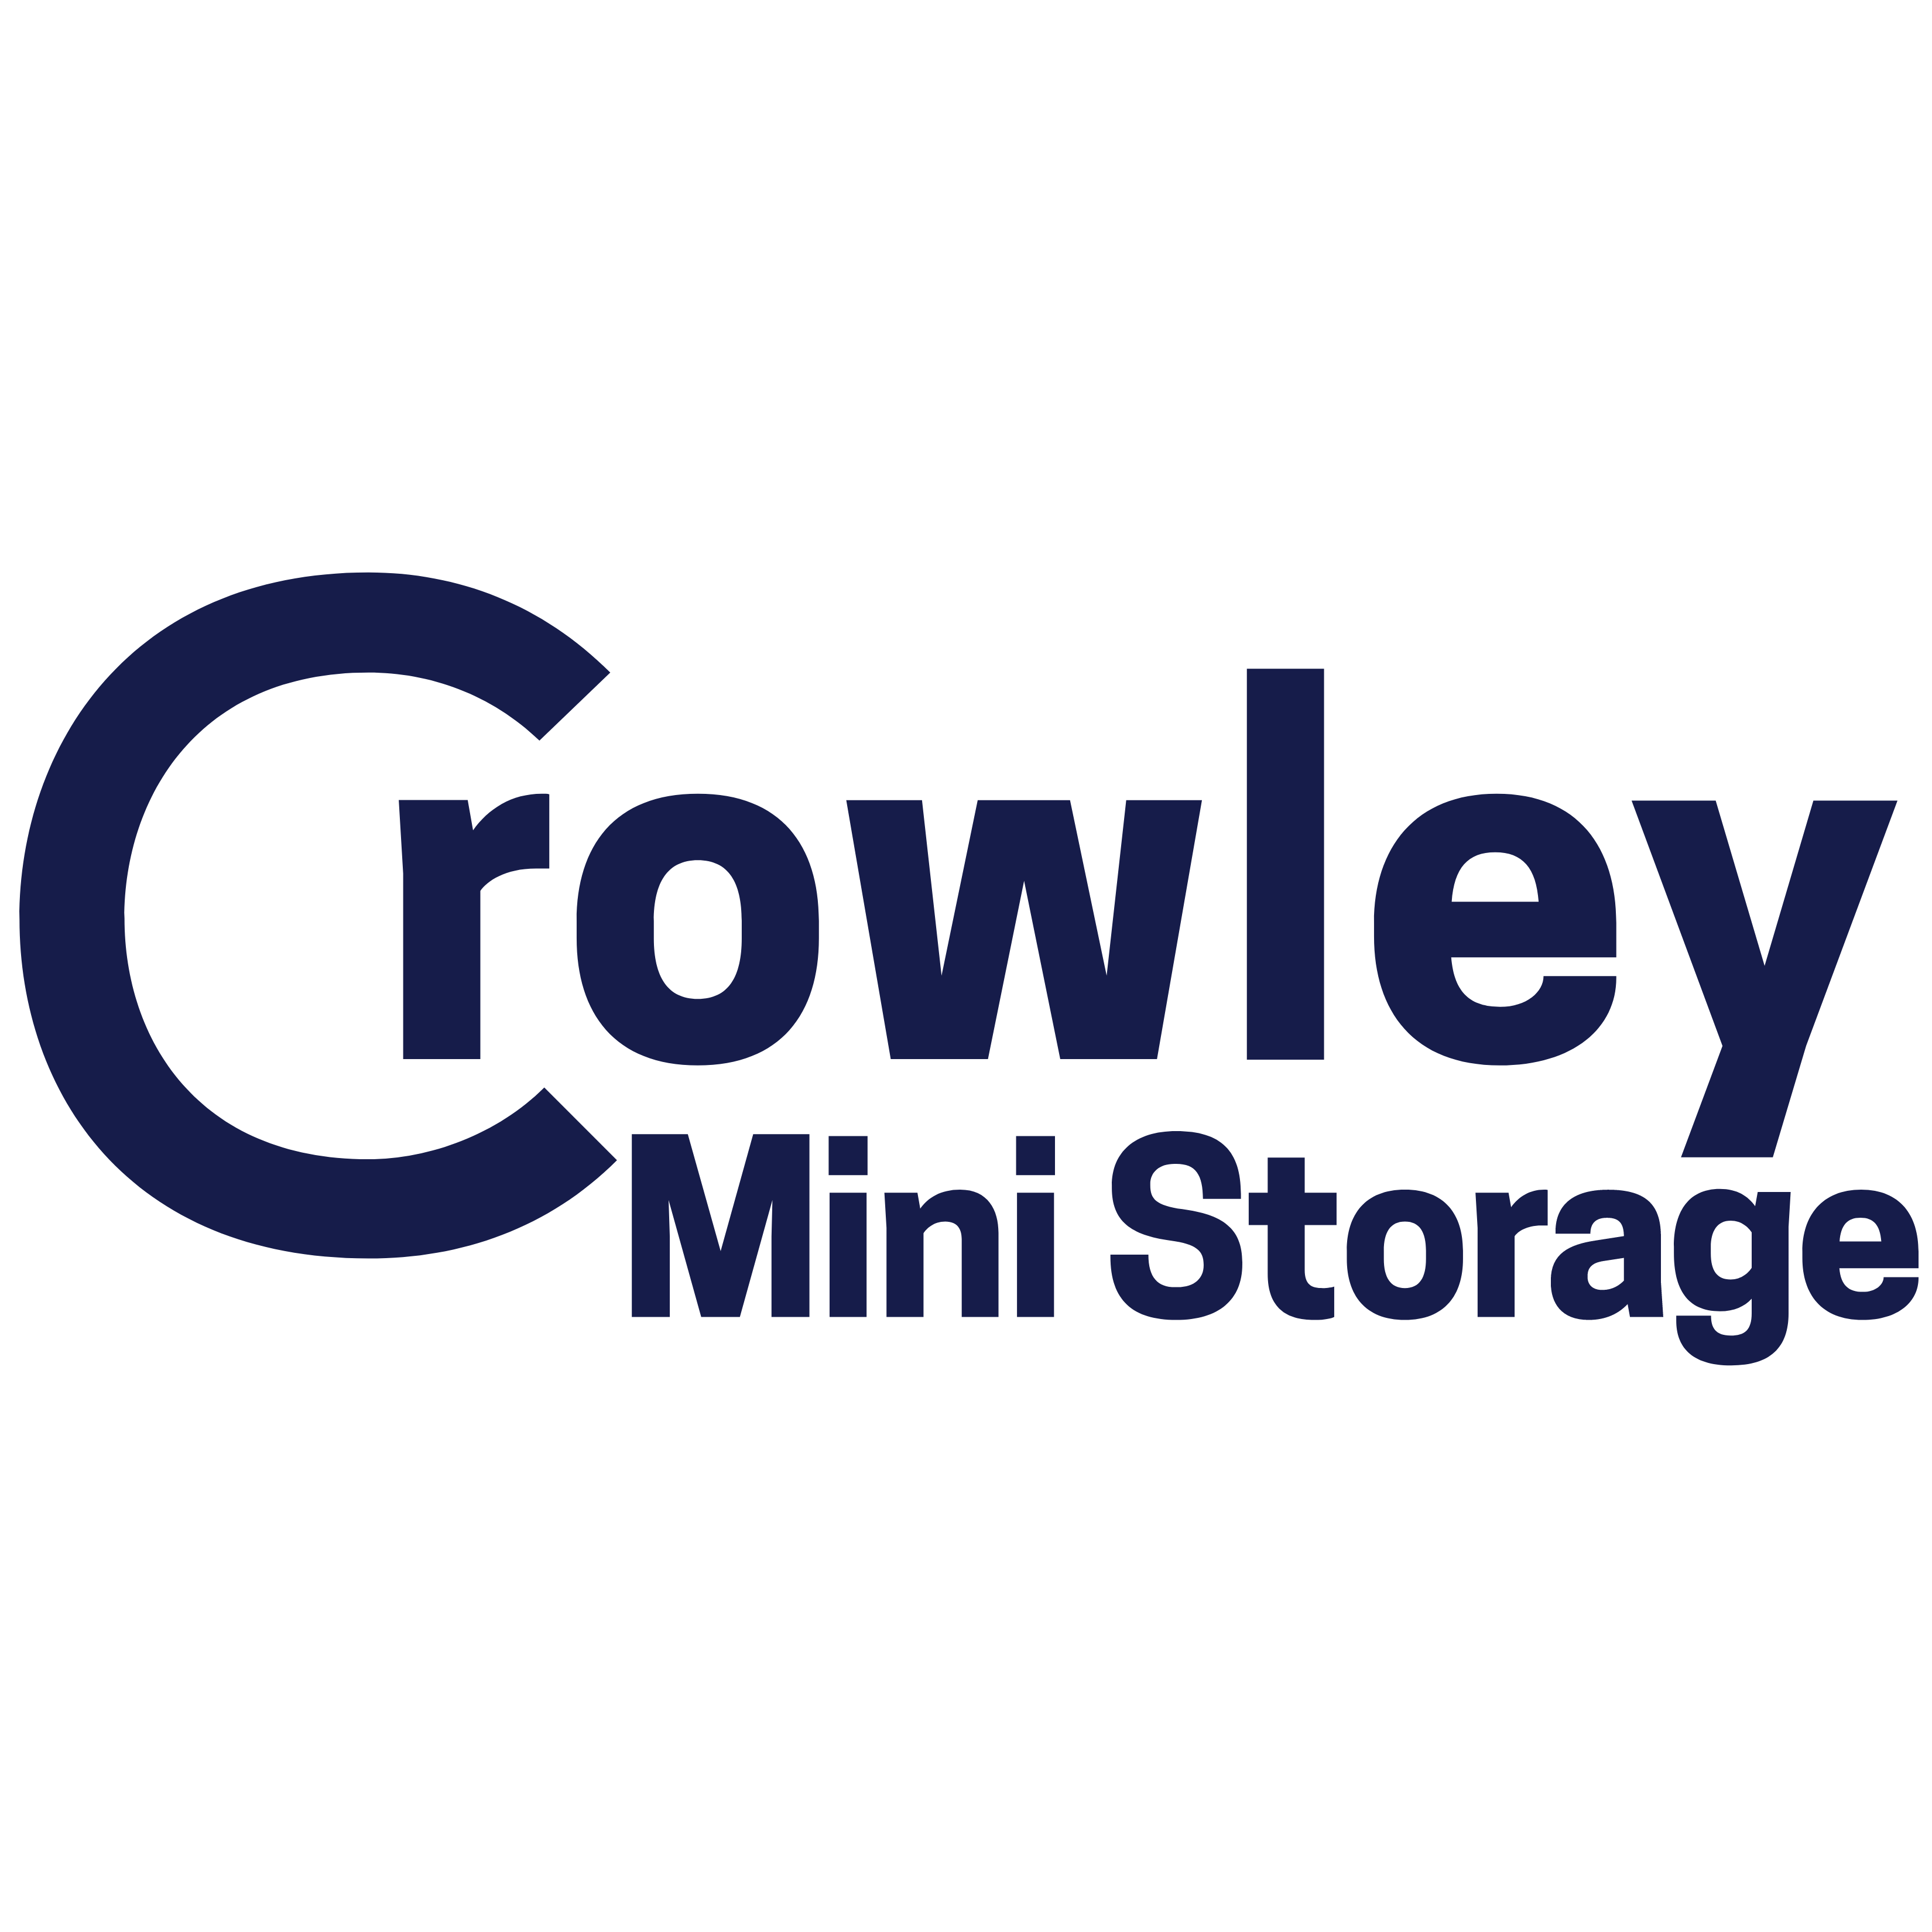 Crowley Mini Storage